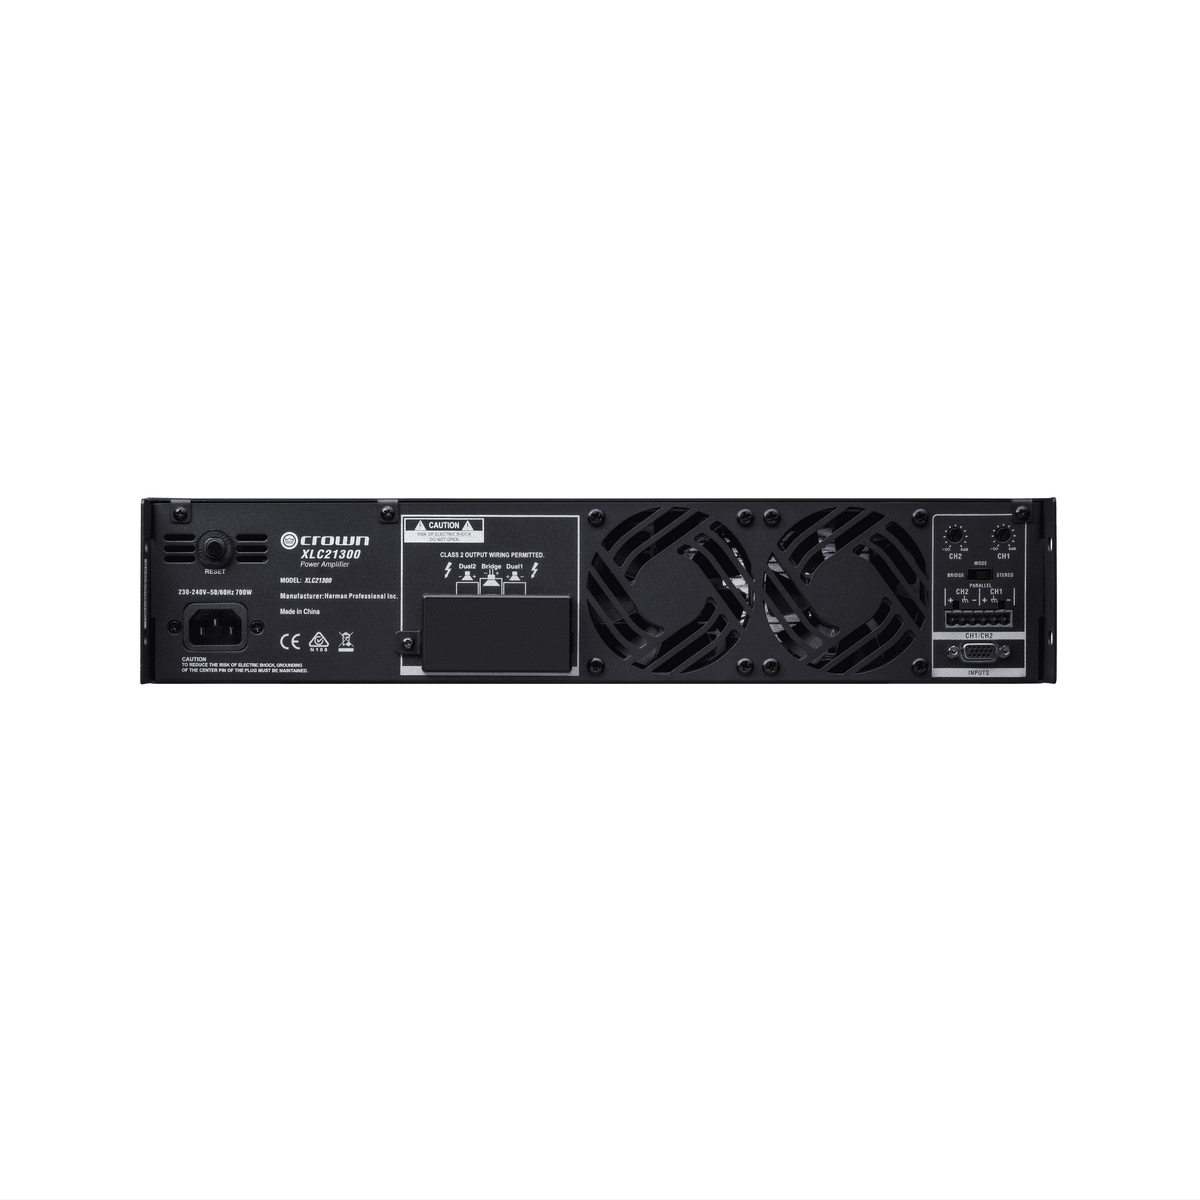 Crown XLC 21300 2-Channel, 1300W at Ohms Power Amplifier